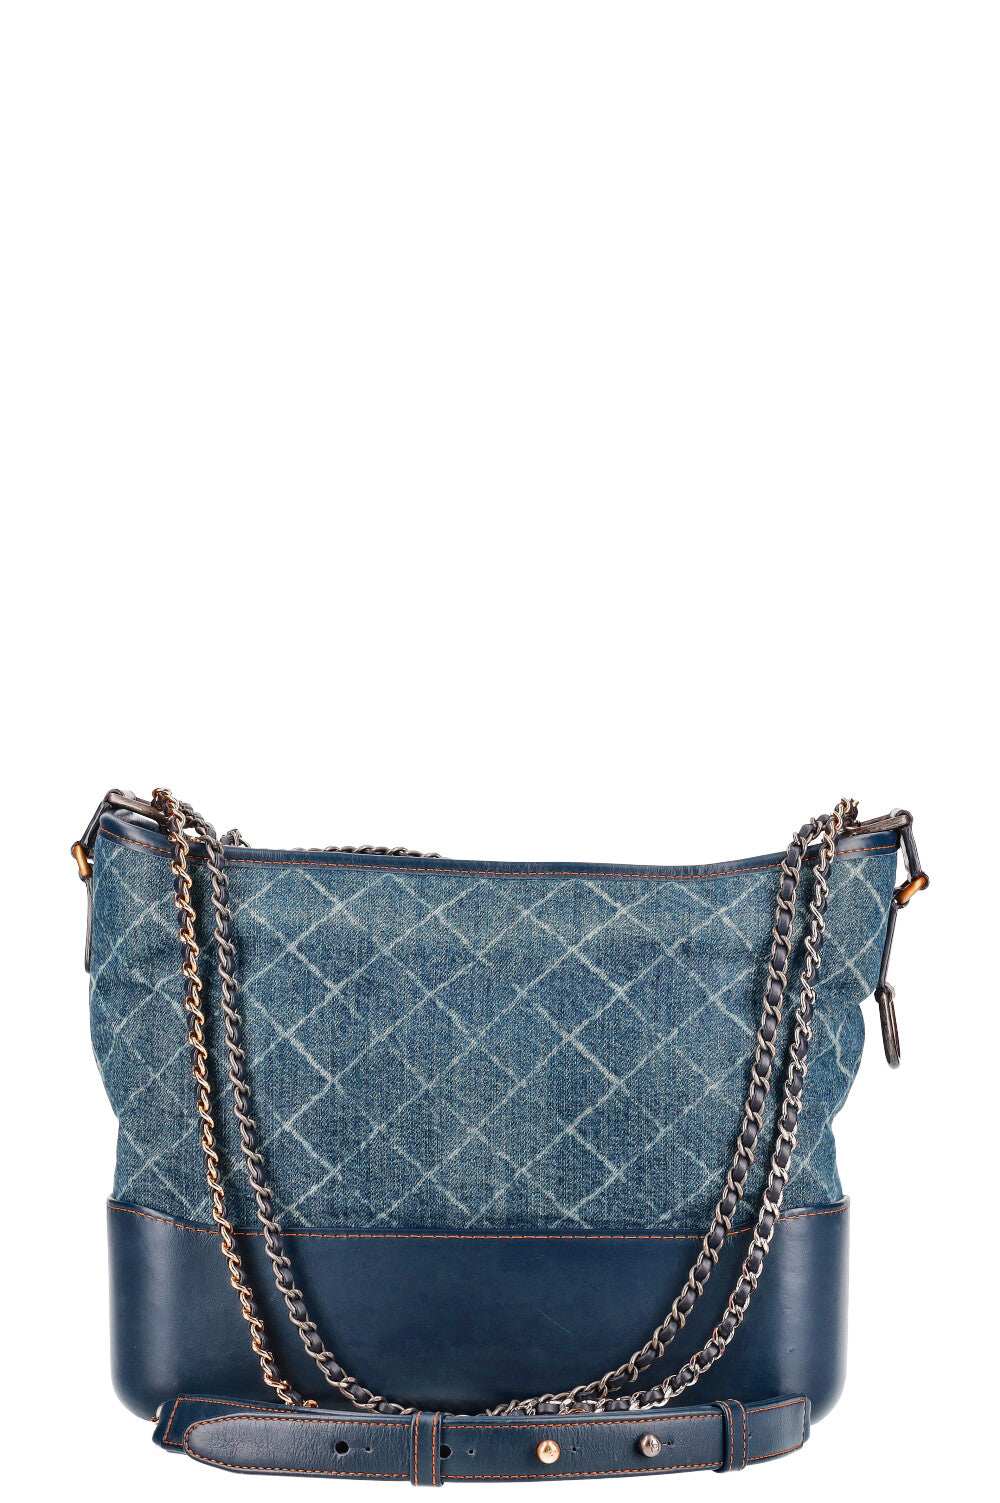 Chanel Classic Flap Bag Light Blue màu xanh nhạt  97Luxury